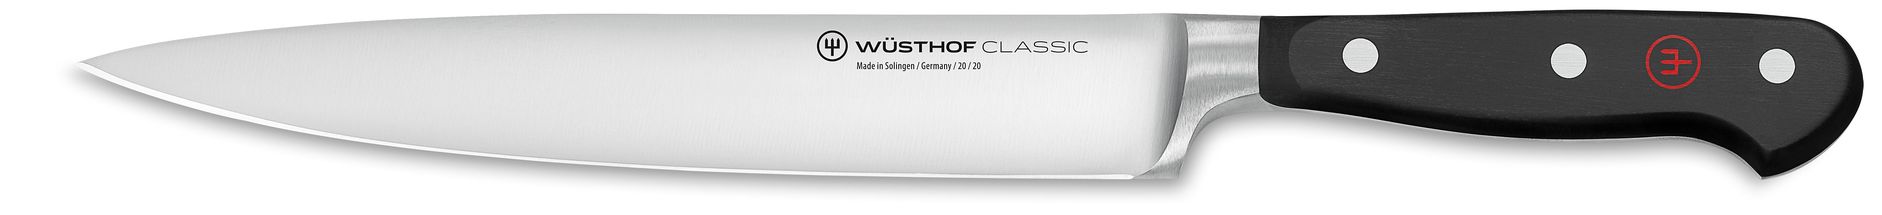 Wüsthof Schinkenmesser Classic 20 cm